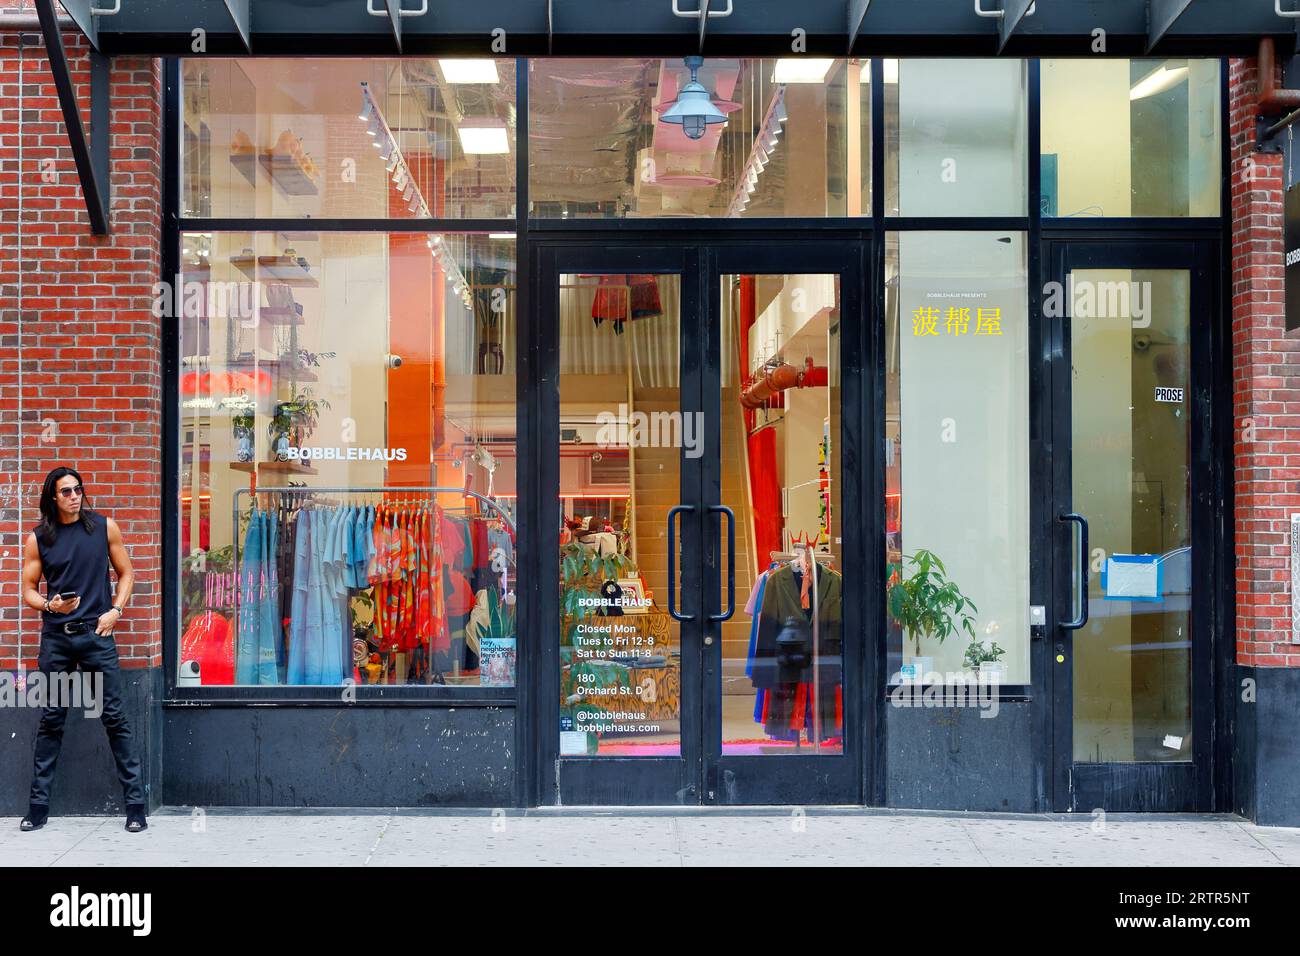 Bobblehaus 菠帮屋, 180 Orchard St, New York. New Yorker Schaufensterfoto einer regenerativen, genderlosen Modeboutique in Manhattans Lower East Side. Stockfoto